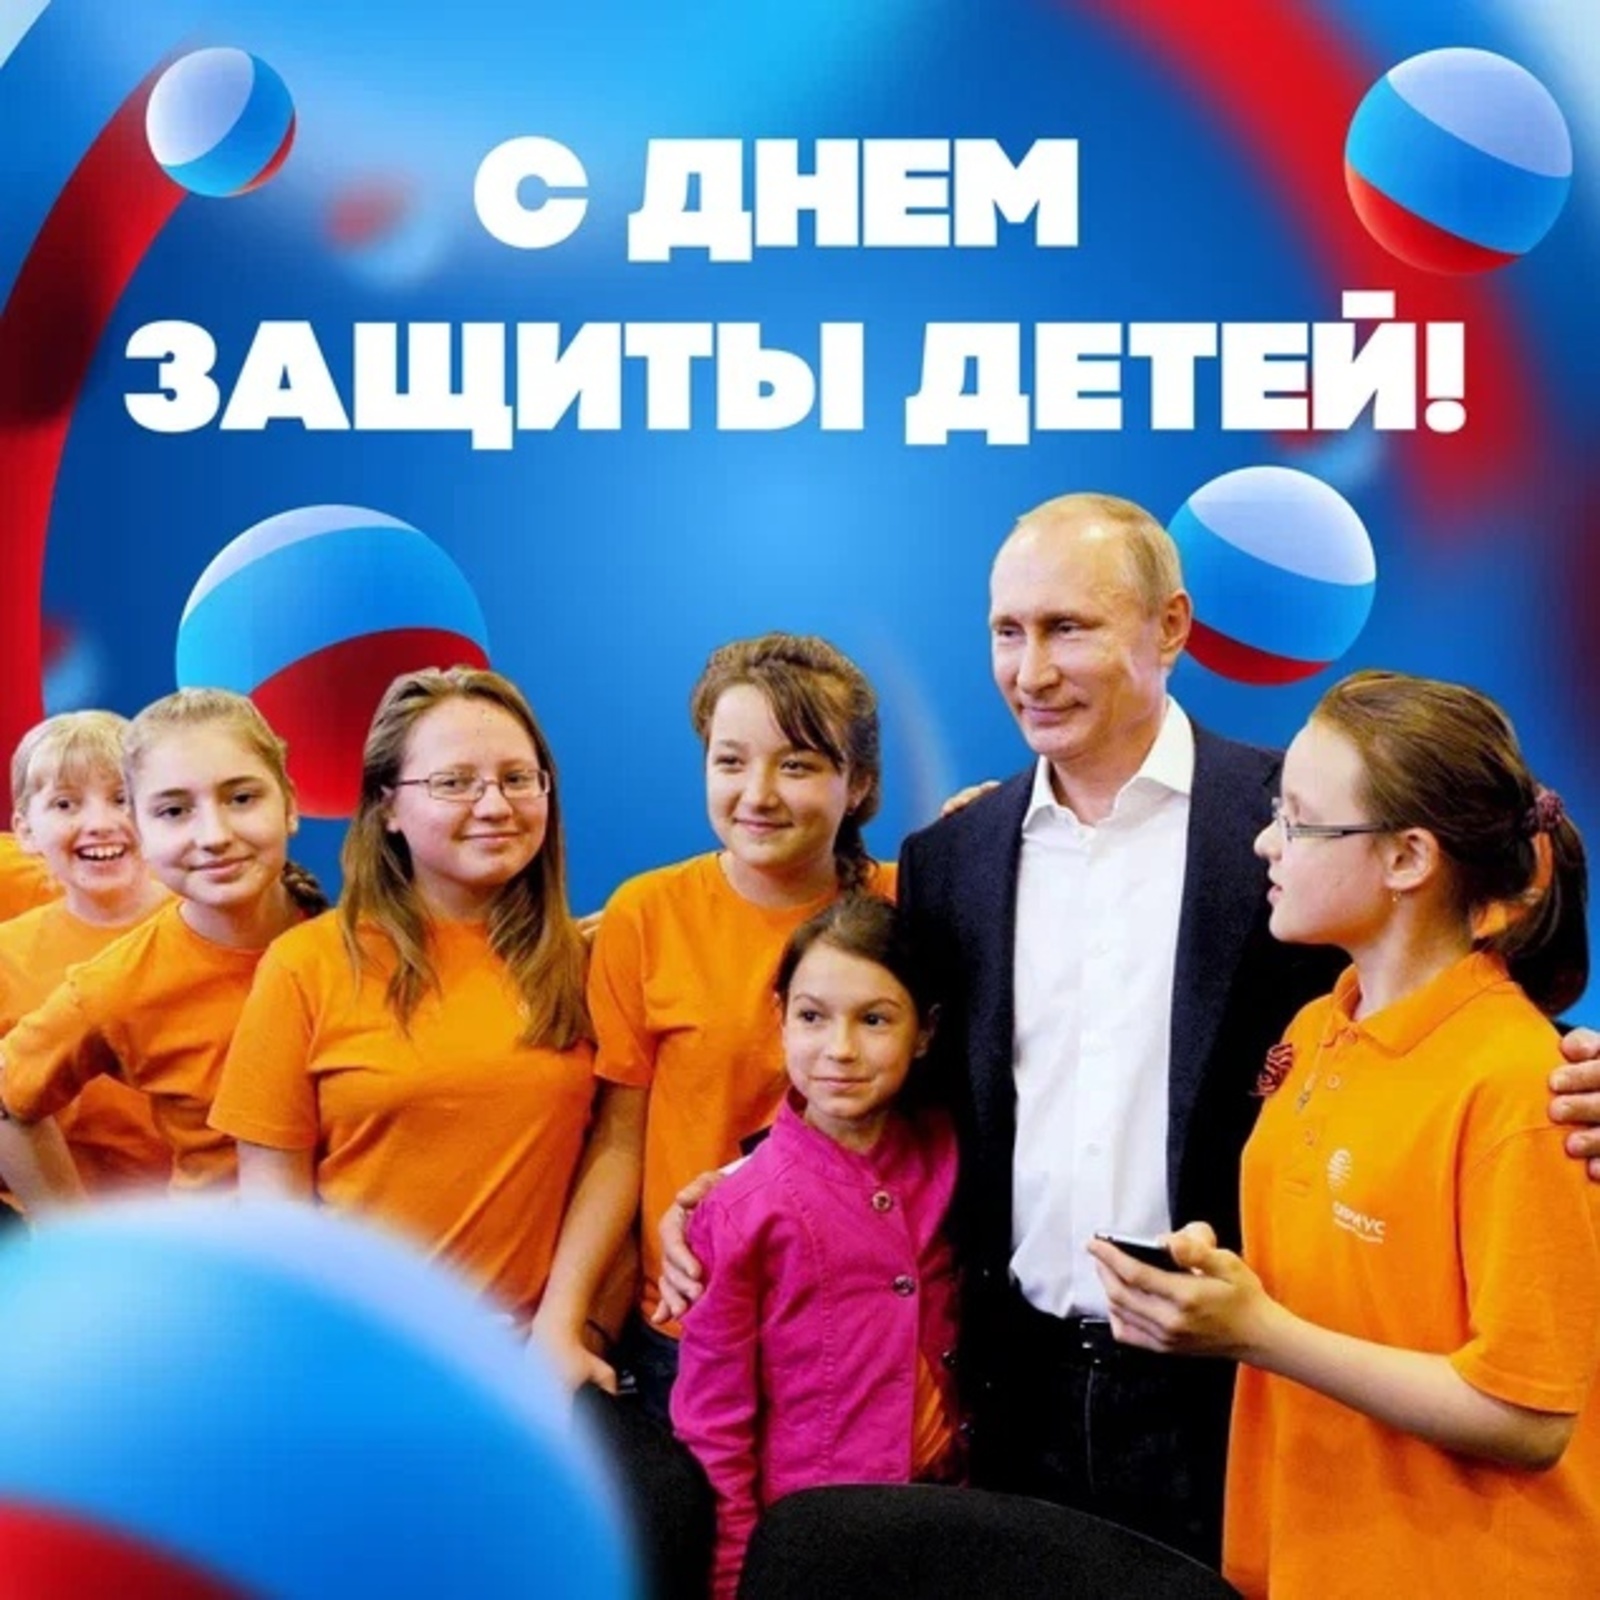 Владимир Путин поздравил россиян с Днем защиты детей Владимир Путин поздравил россиян с Международным днем защиты дет